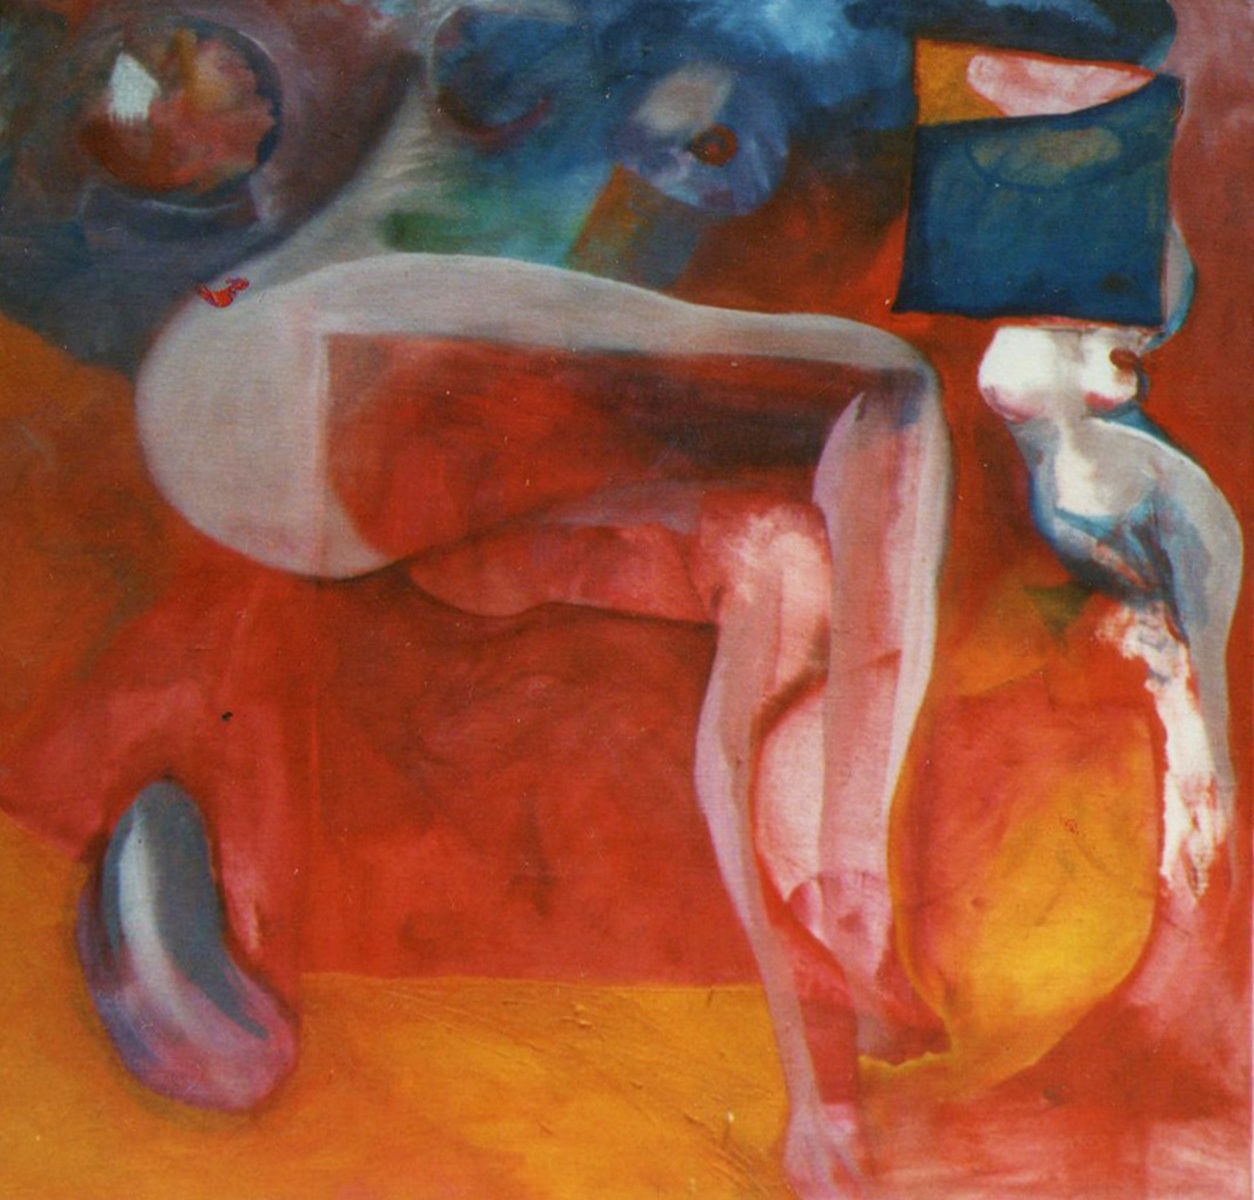 Pintura de nu reclinado no sofa vermelho